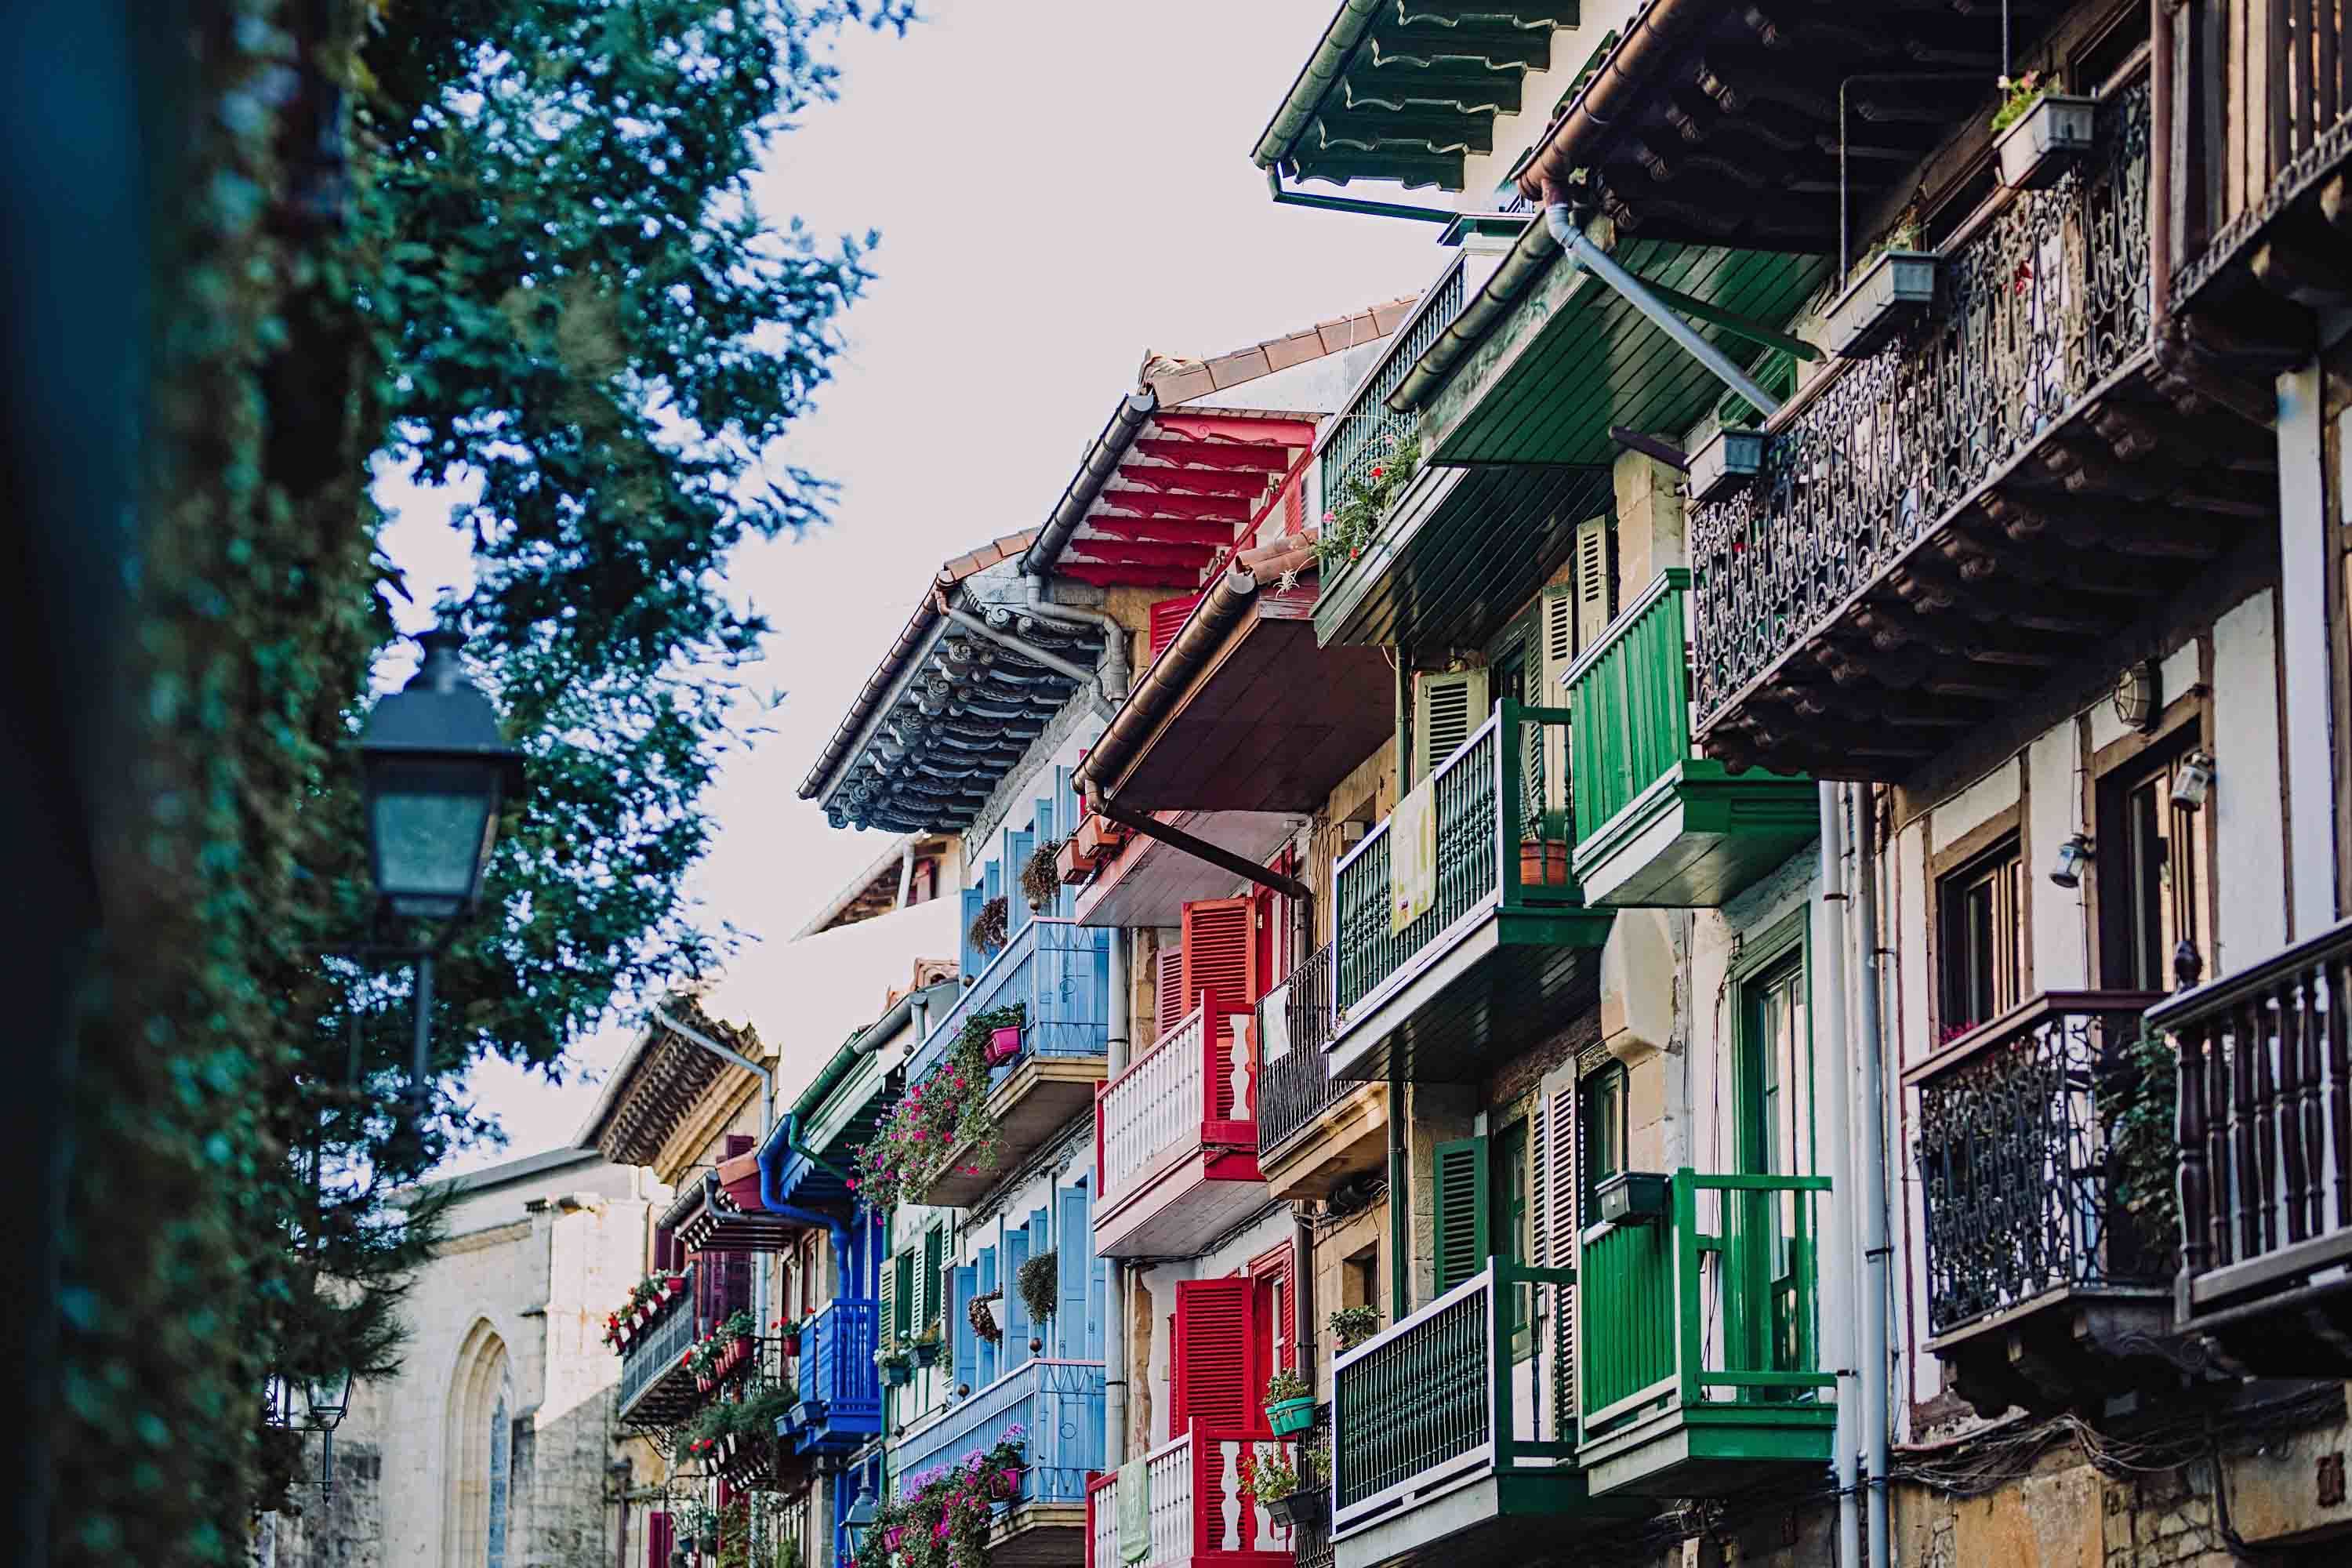 Las coloridas fachadas del barrio de Pescadores de Hondarribia.